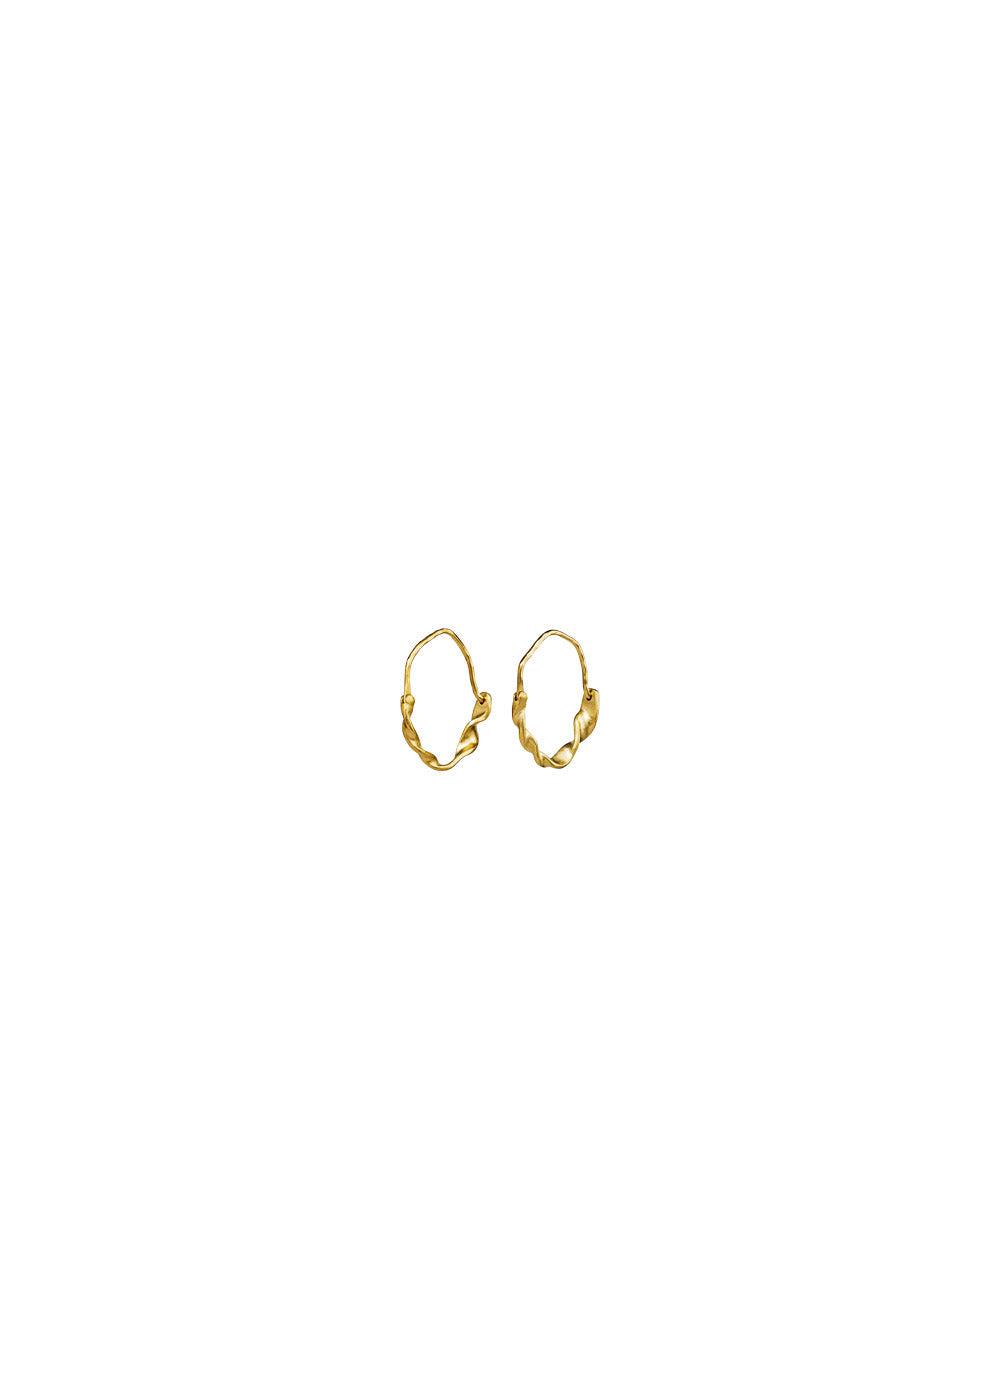 Maanestens Rosie earring - Sterling Silver (925) Gold Plated. Køb øreringe her.